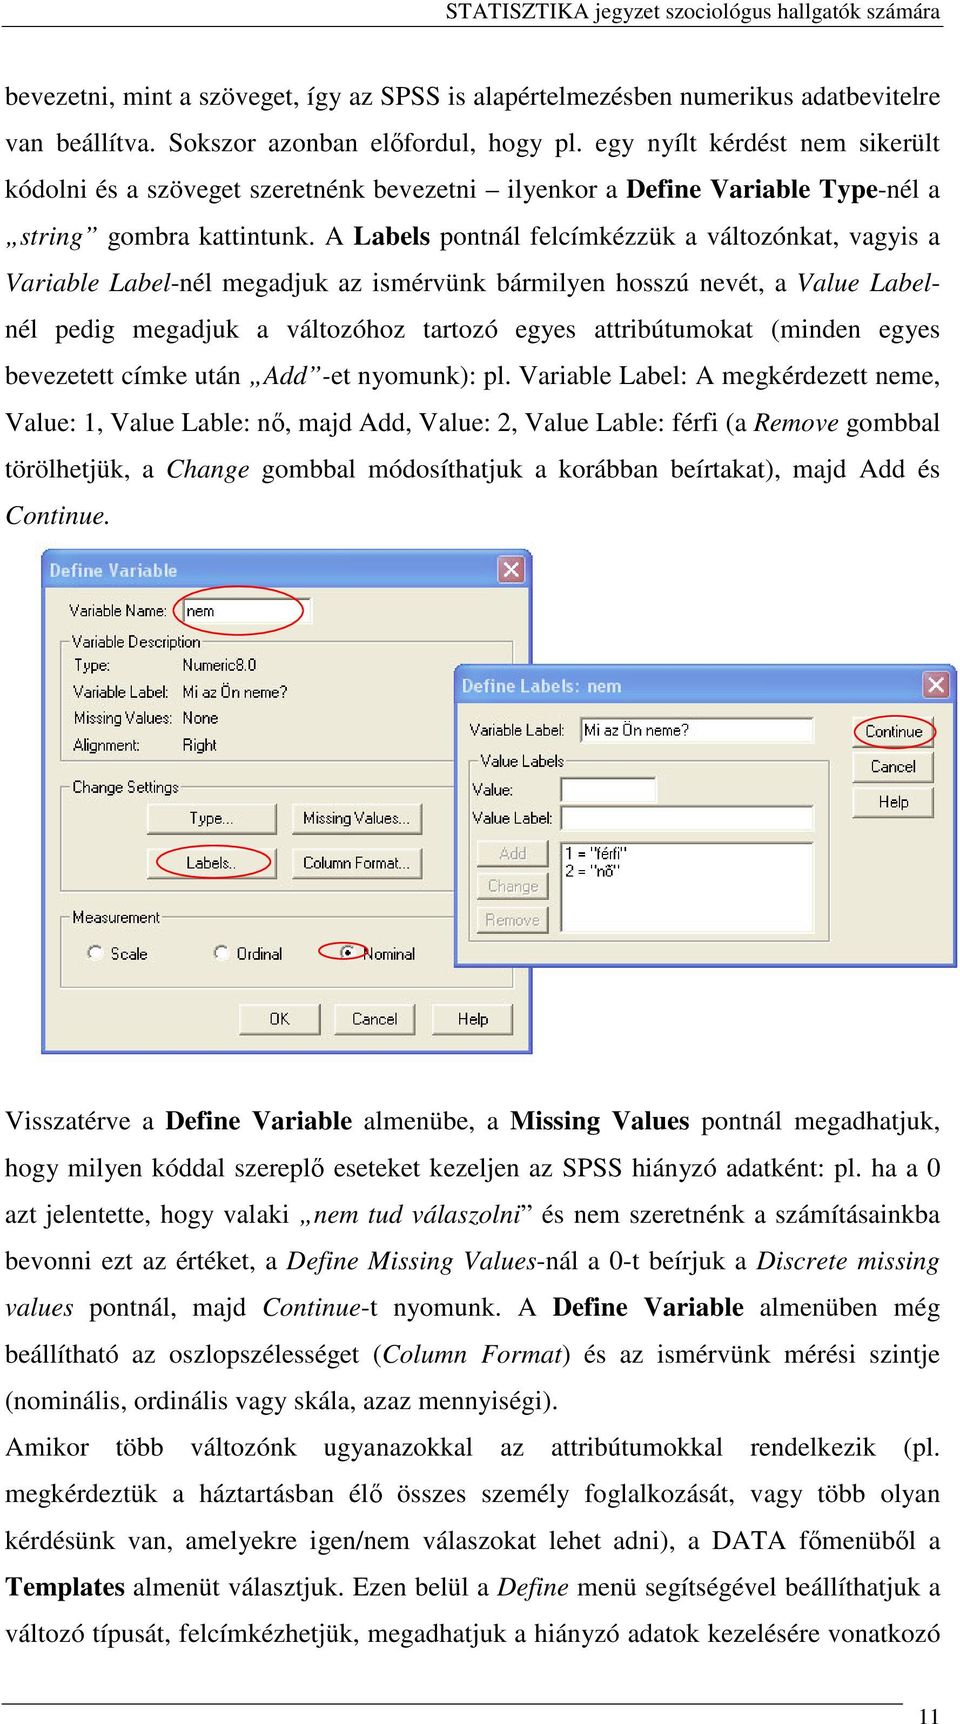 A Labels pontnál felcímkézzük a változónkat, vagyis a Variable Label-nél megadjuk az ismérvünk bármilyen hosszú nevét, a Value Labelnél pedig megadjuk a változóhoz tartozó egyes attribútumokat